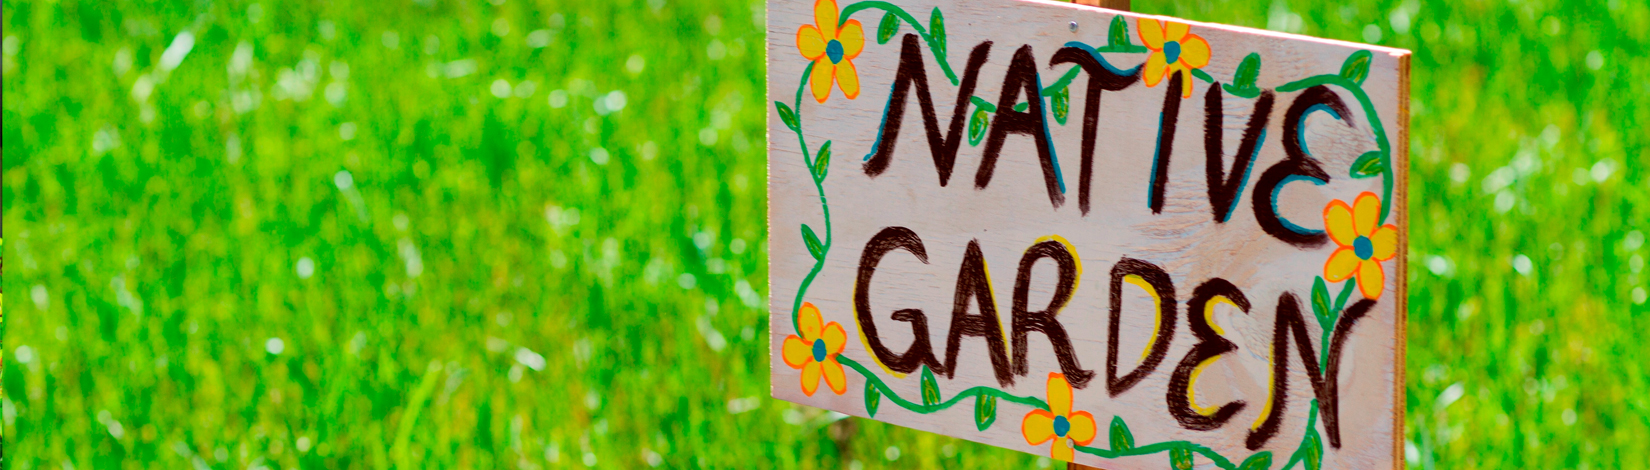 Native Garden sign